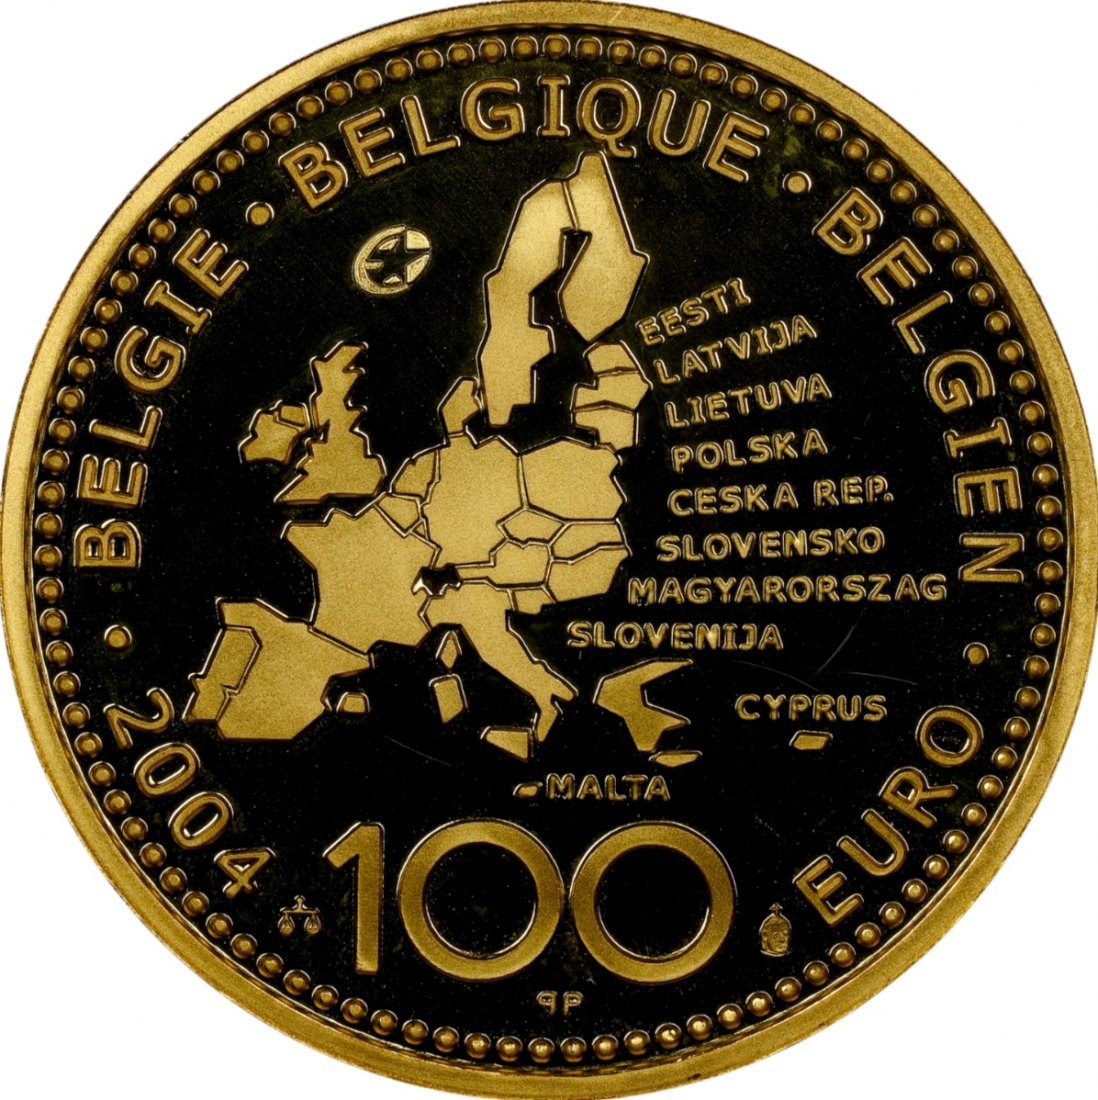  Belgien 100 Euro 2004 | NGC PF69 ULTRA CAMEO TOP POP | Erweiterung der europäischen Union   